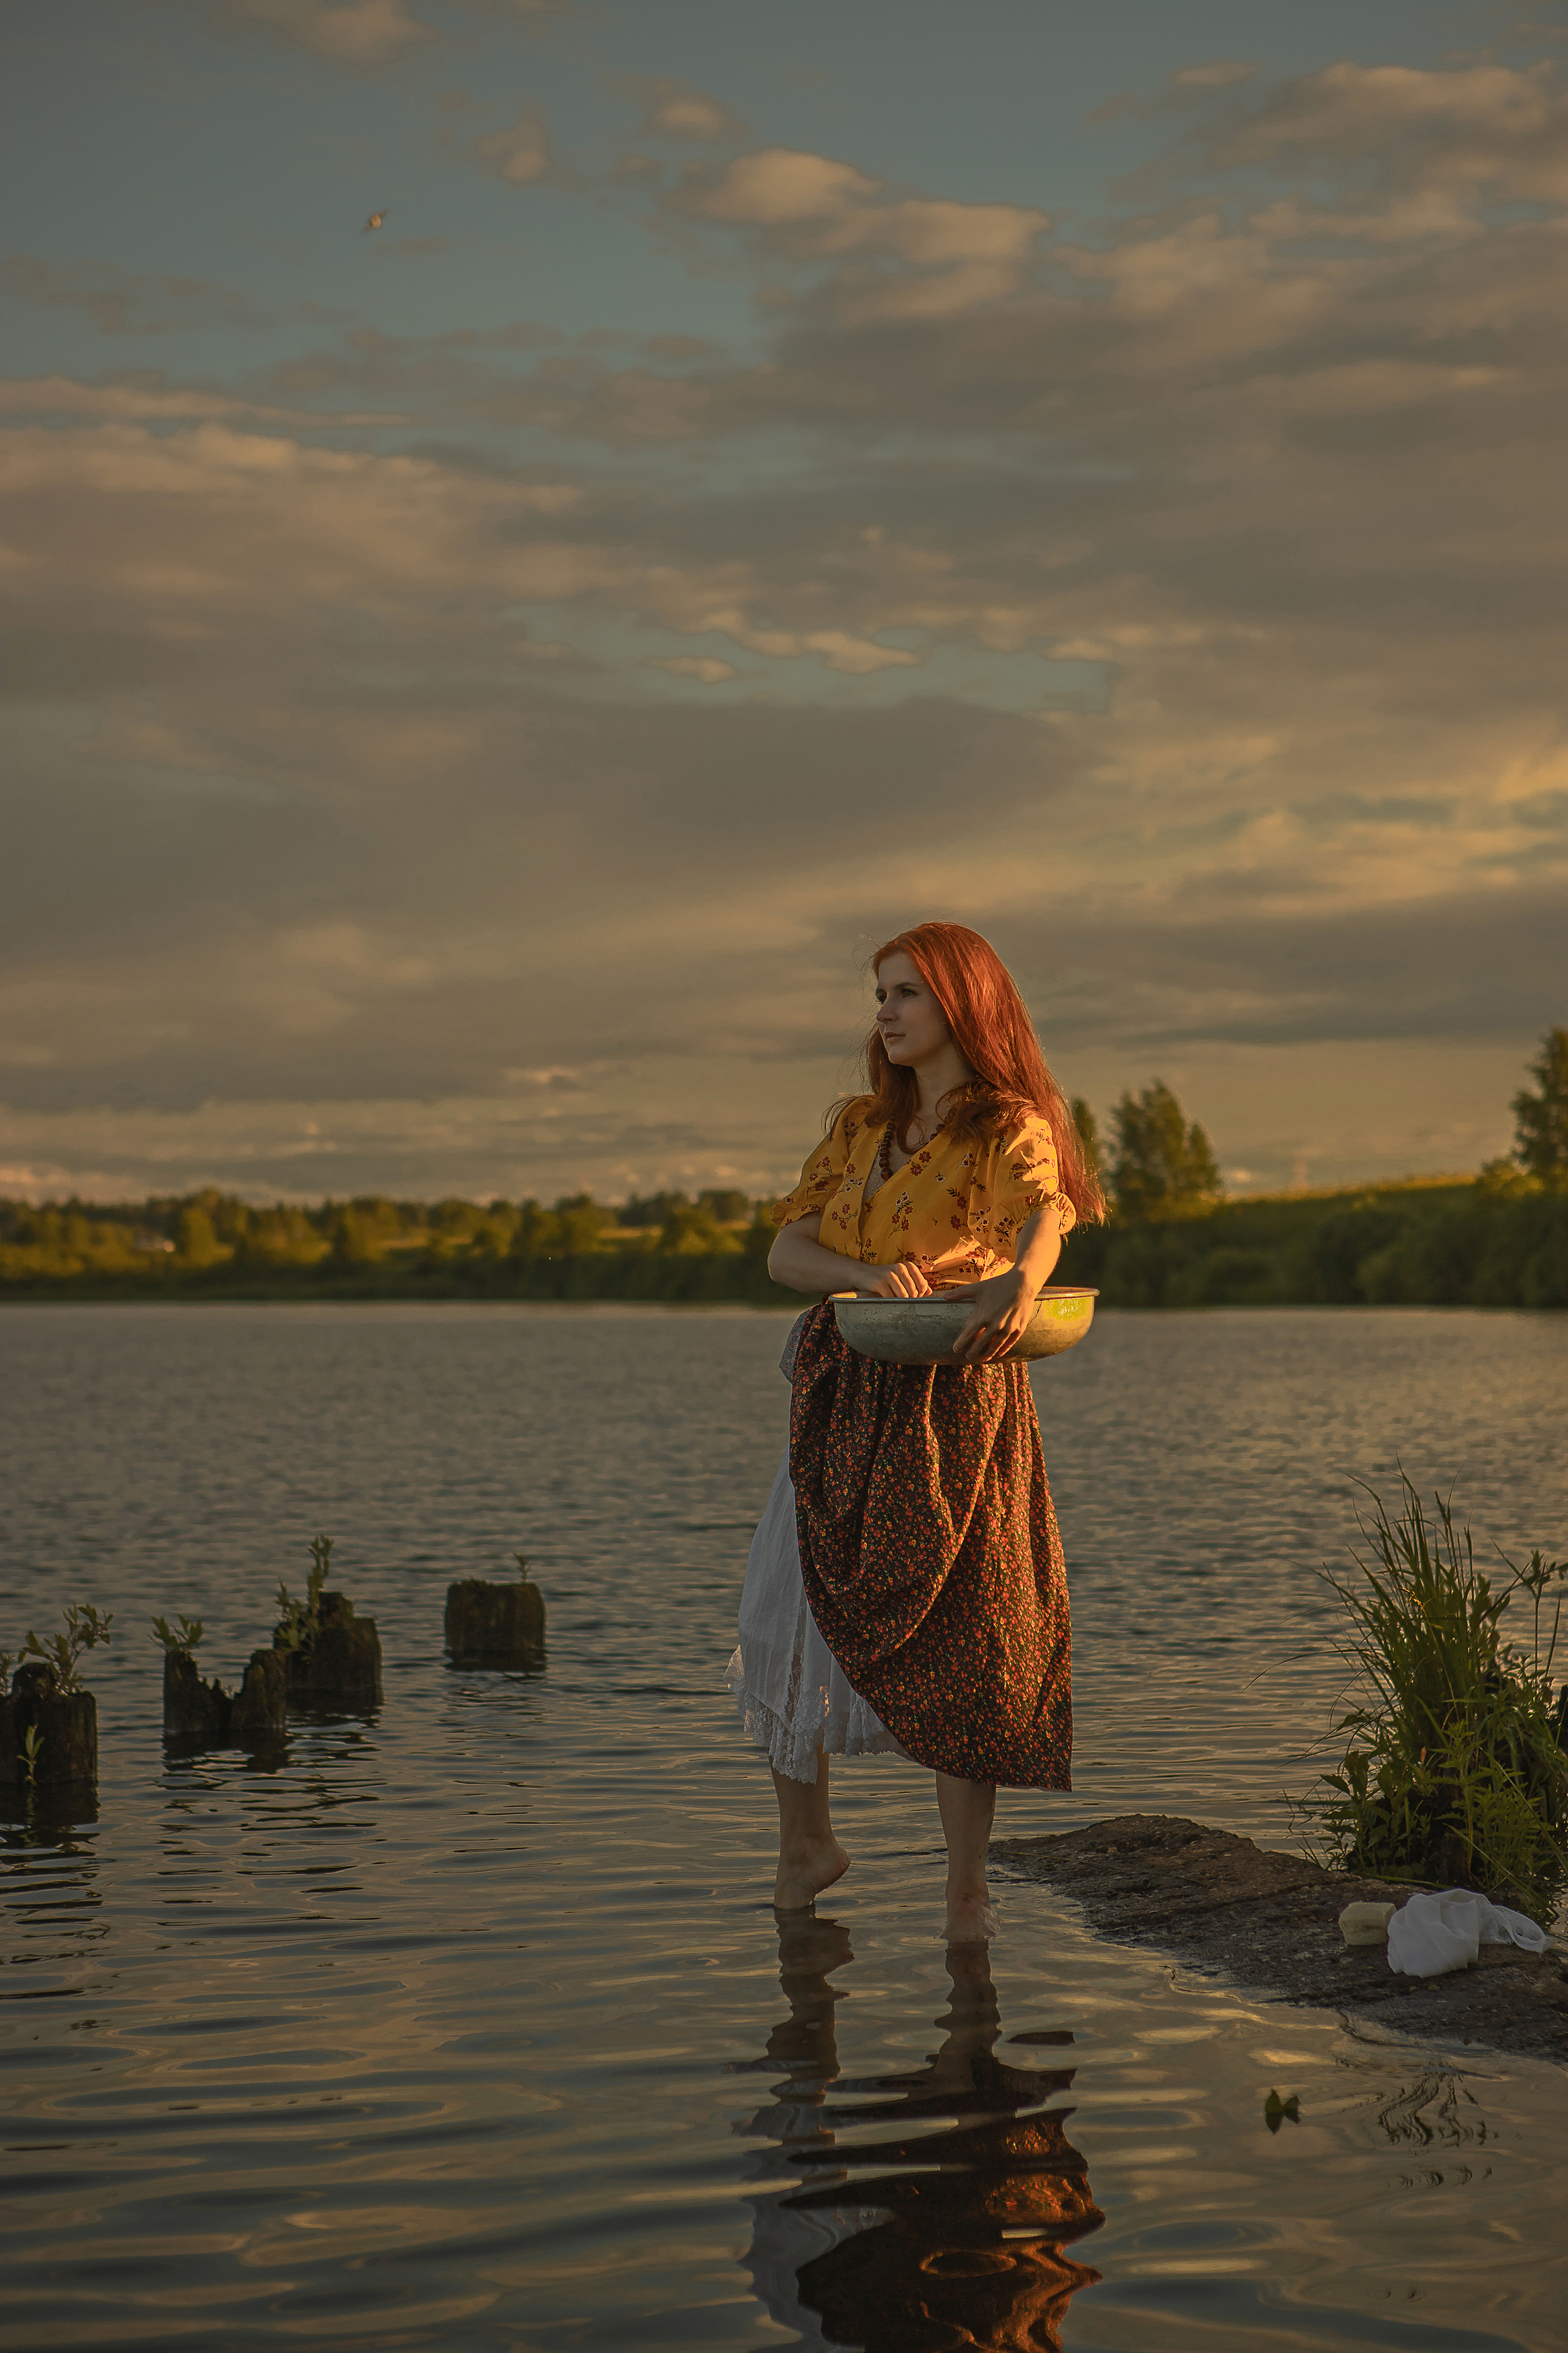 река девушка красота любовь природа искусство фотография покой радость лодка облака вода небо, Шепелева Татьяна